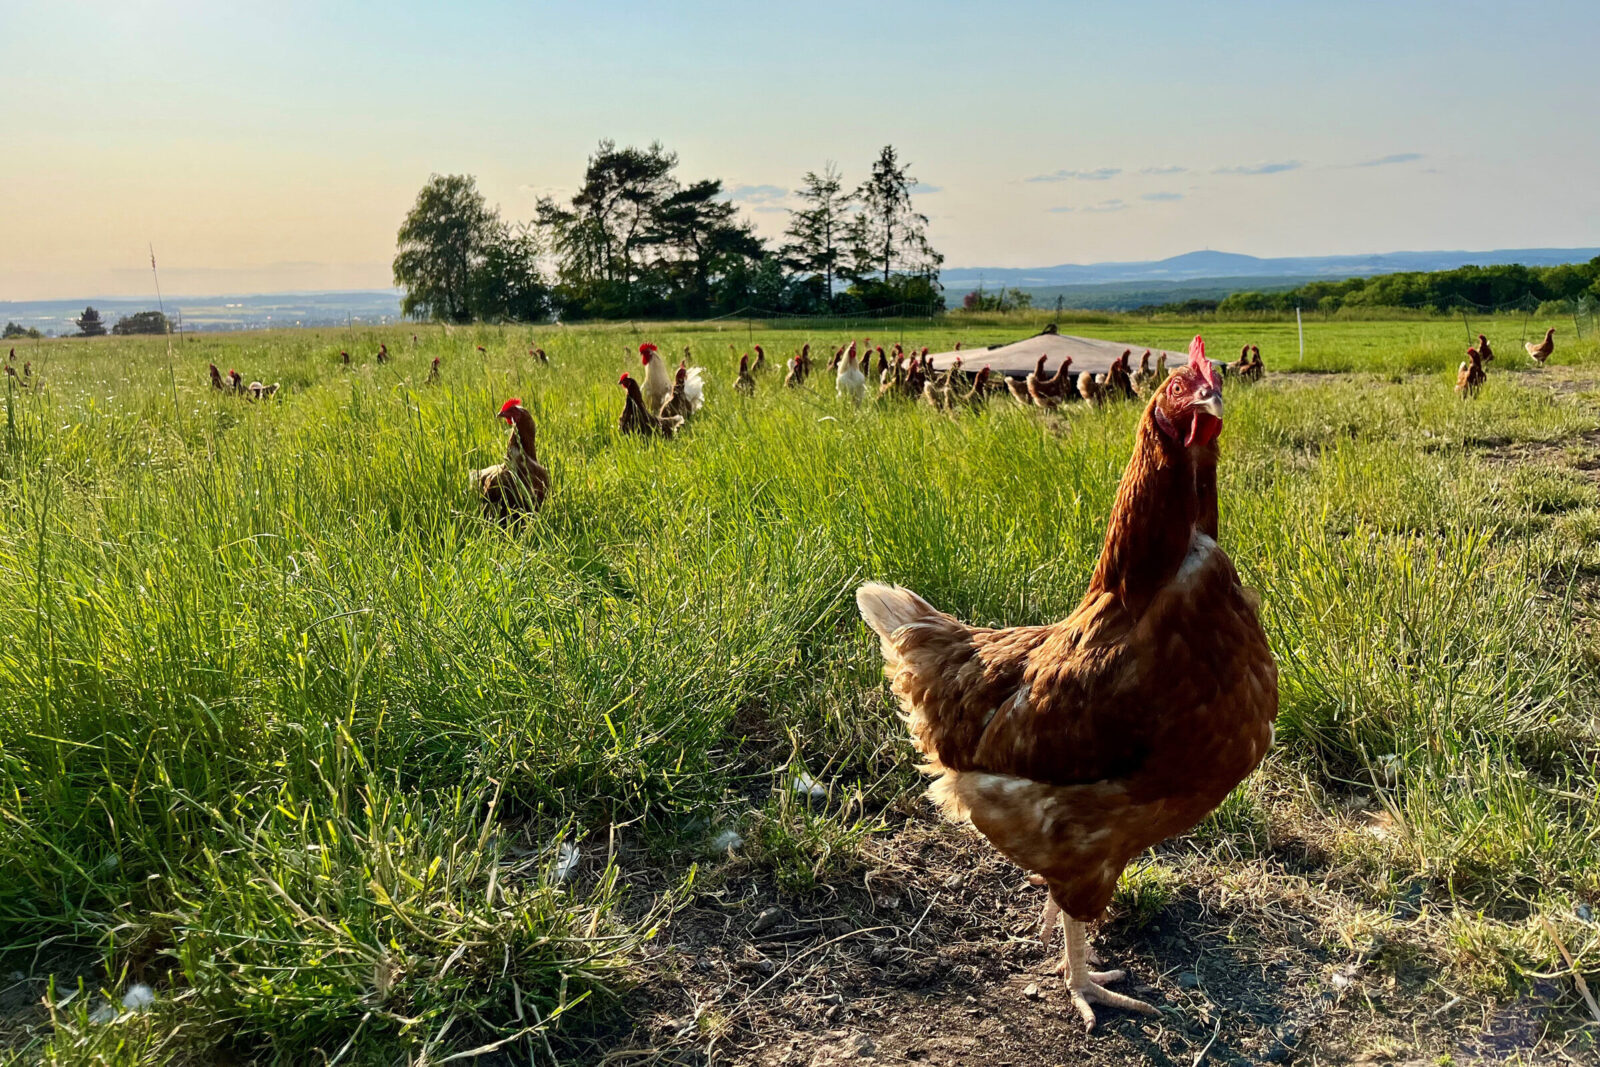 Zu sehen sind Hühner, die sich auf einer Wiese ,in einem weitläufig abgezäunten Bereich, befinden. Im Vordergrund ist ein Huhn deutlich abgebildet.